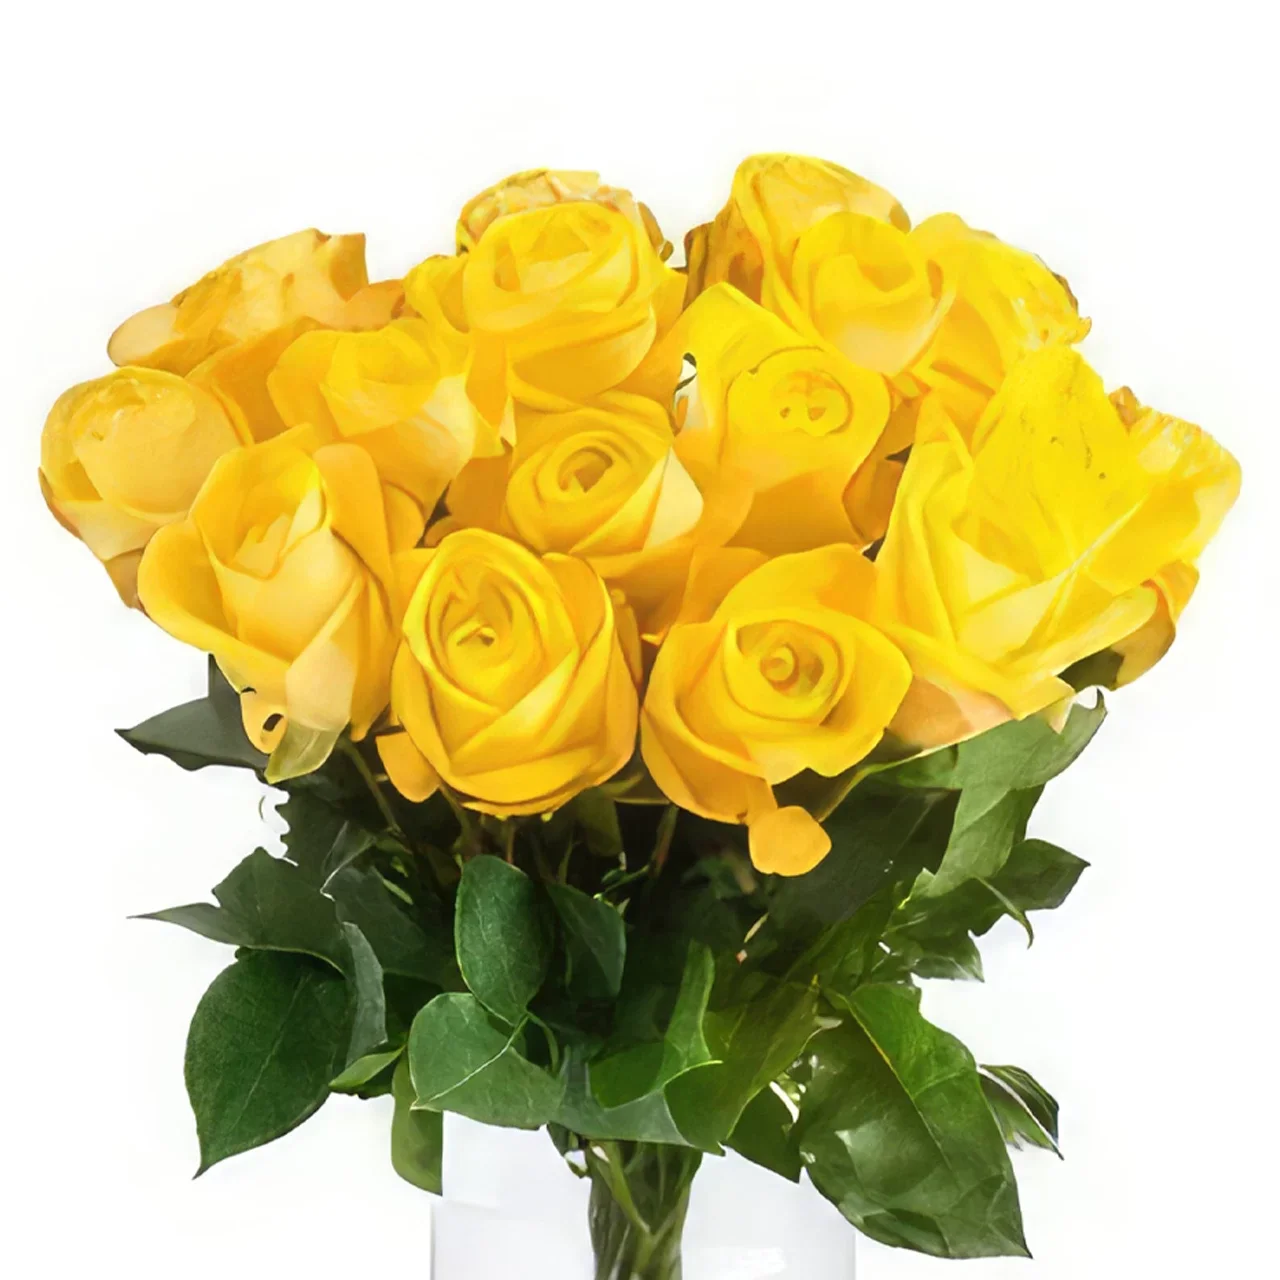 Haag květiny- Kytice žlutých růží Kytice/aranžování květin